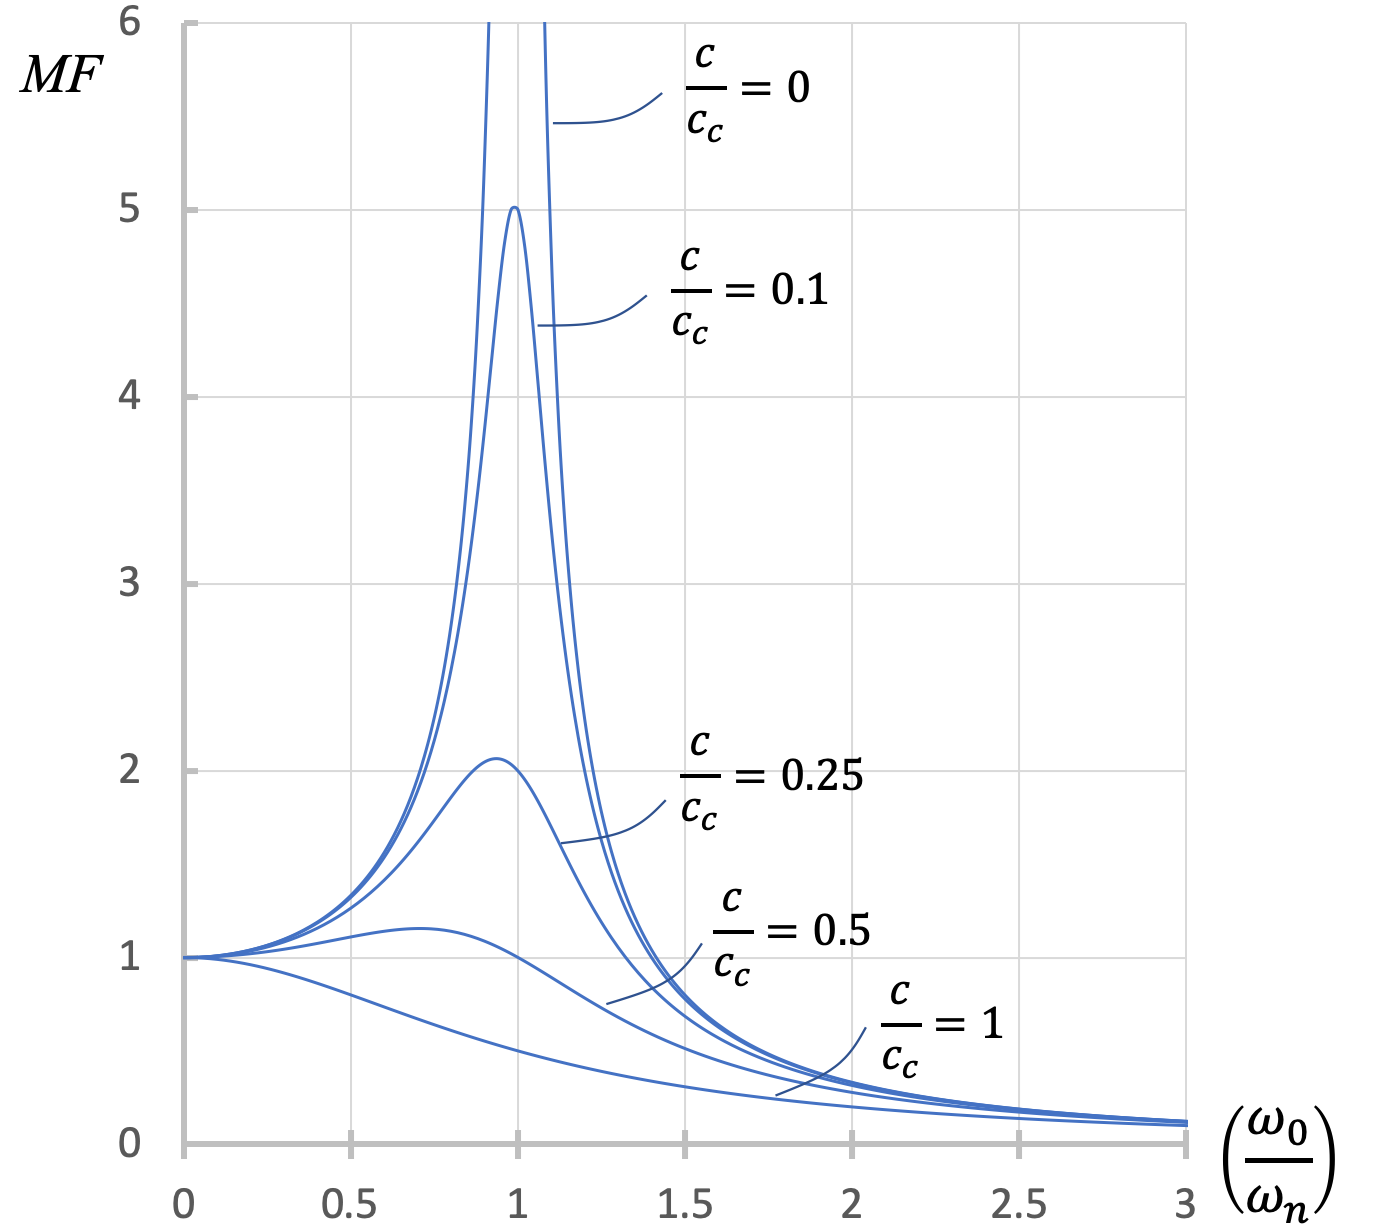 Gráfica de MF en el eje vertical vs la relación entre la velocidad angular inicial y la frecuencia natural angular del sistema en el eje horizontal, para valores variables de la relación de amortiguación. Cada gráfica comienza en el punto (0,1), alcanza una sola cresta cercana a x=1, y va a 0 a medida que el eje x va al infinito. La amplitud de esa cresta está en su mínimo cuando la relación de amortiguación es igual a 1, y va al infinito cuando la relación de amortiguación es igual a 0.